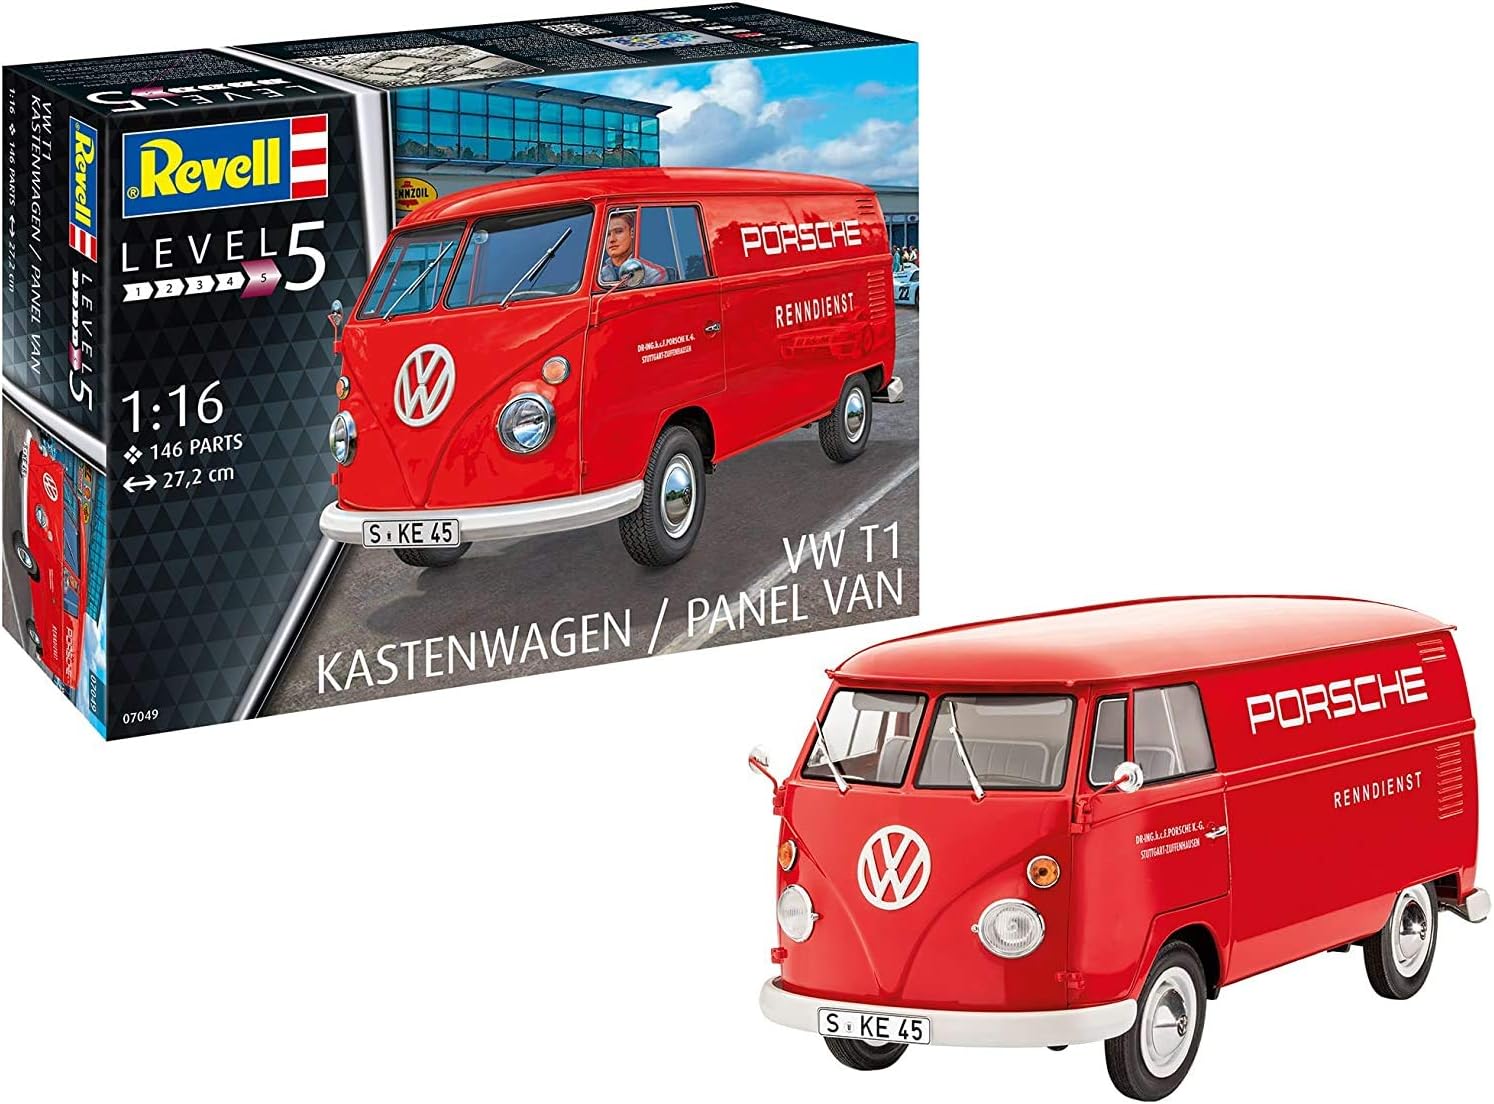 VW T1 Kastenwagen / Panel Van 1:16 Scale